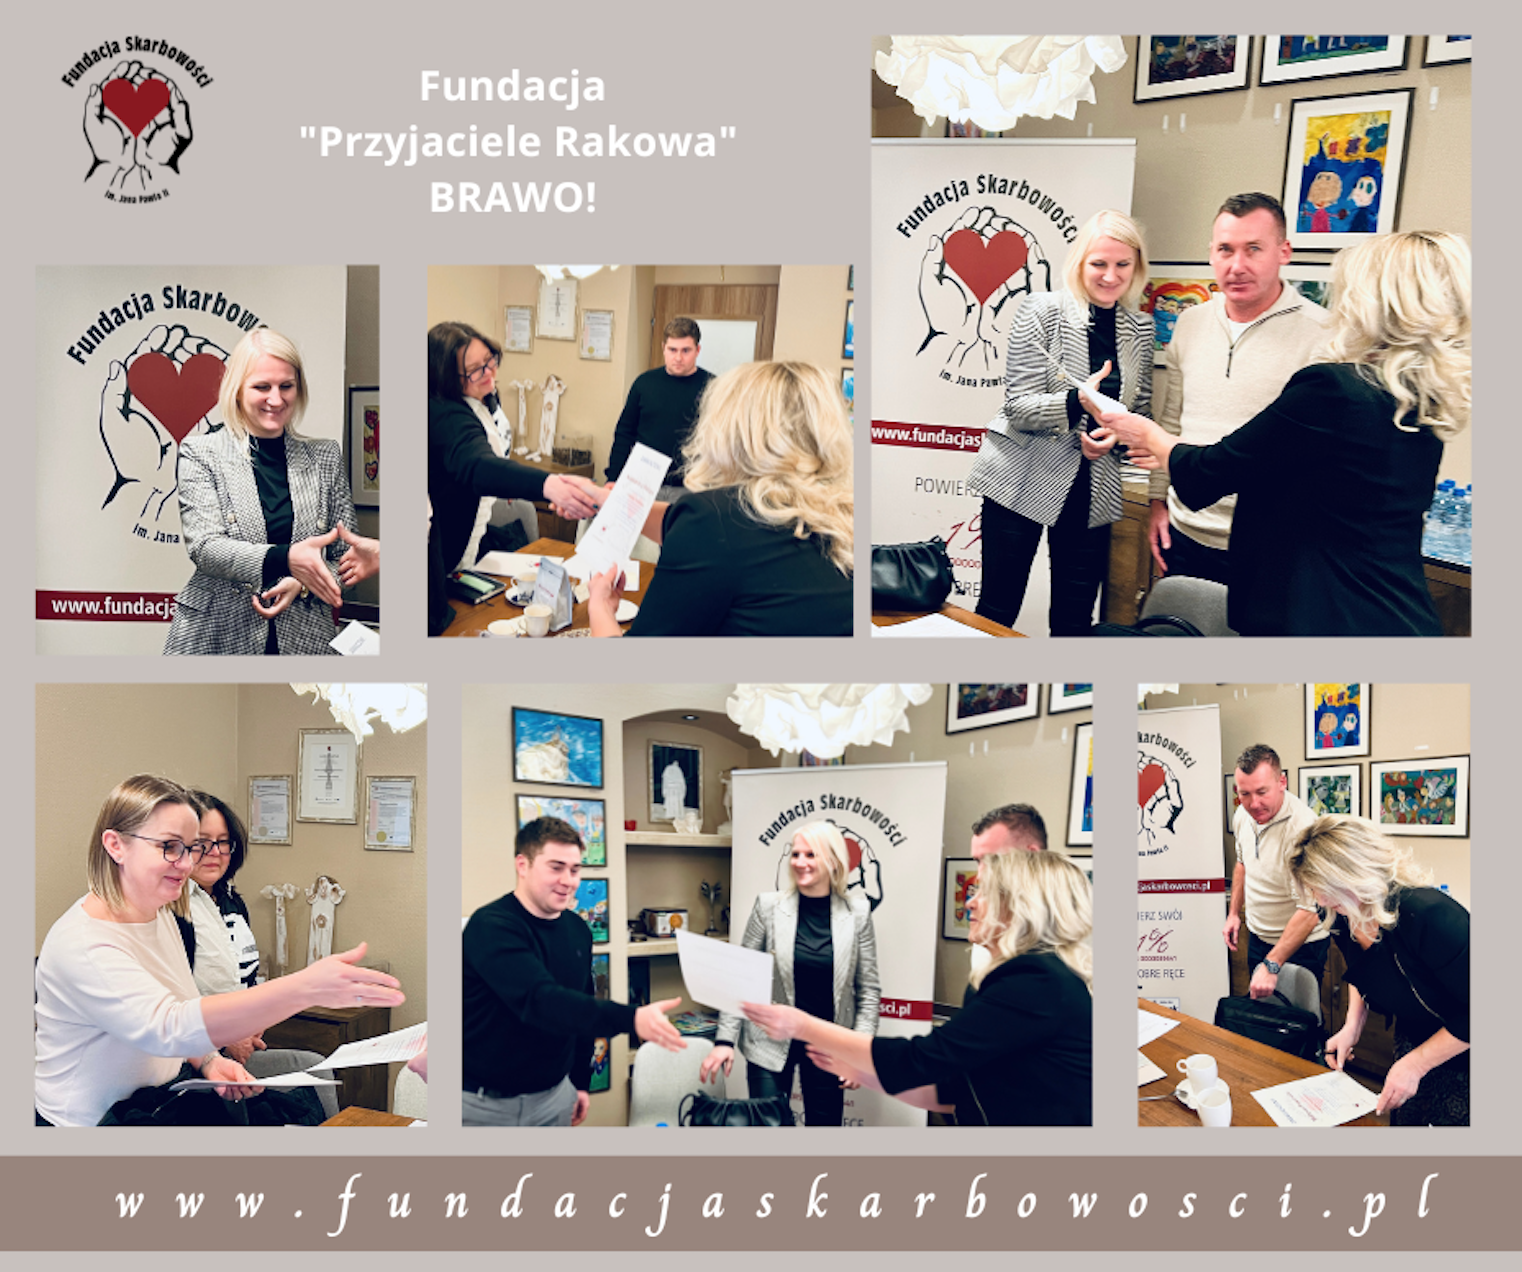 Fundacja “Przyjaciele Rakowa” #RakówCzęstochowa, na szkoleniu w FSJP2 z profesjonalnego fundraisingu w pigułce!